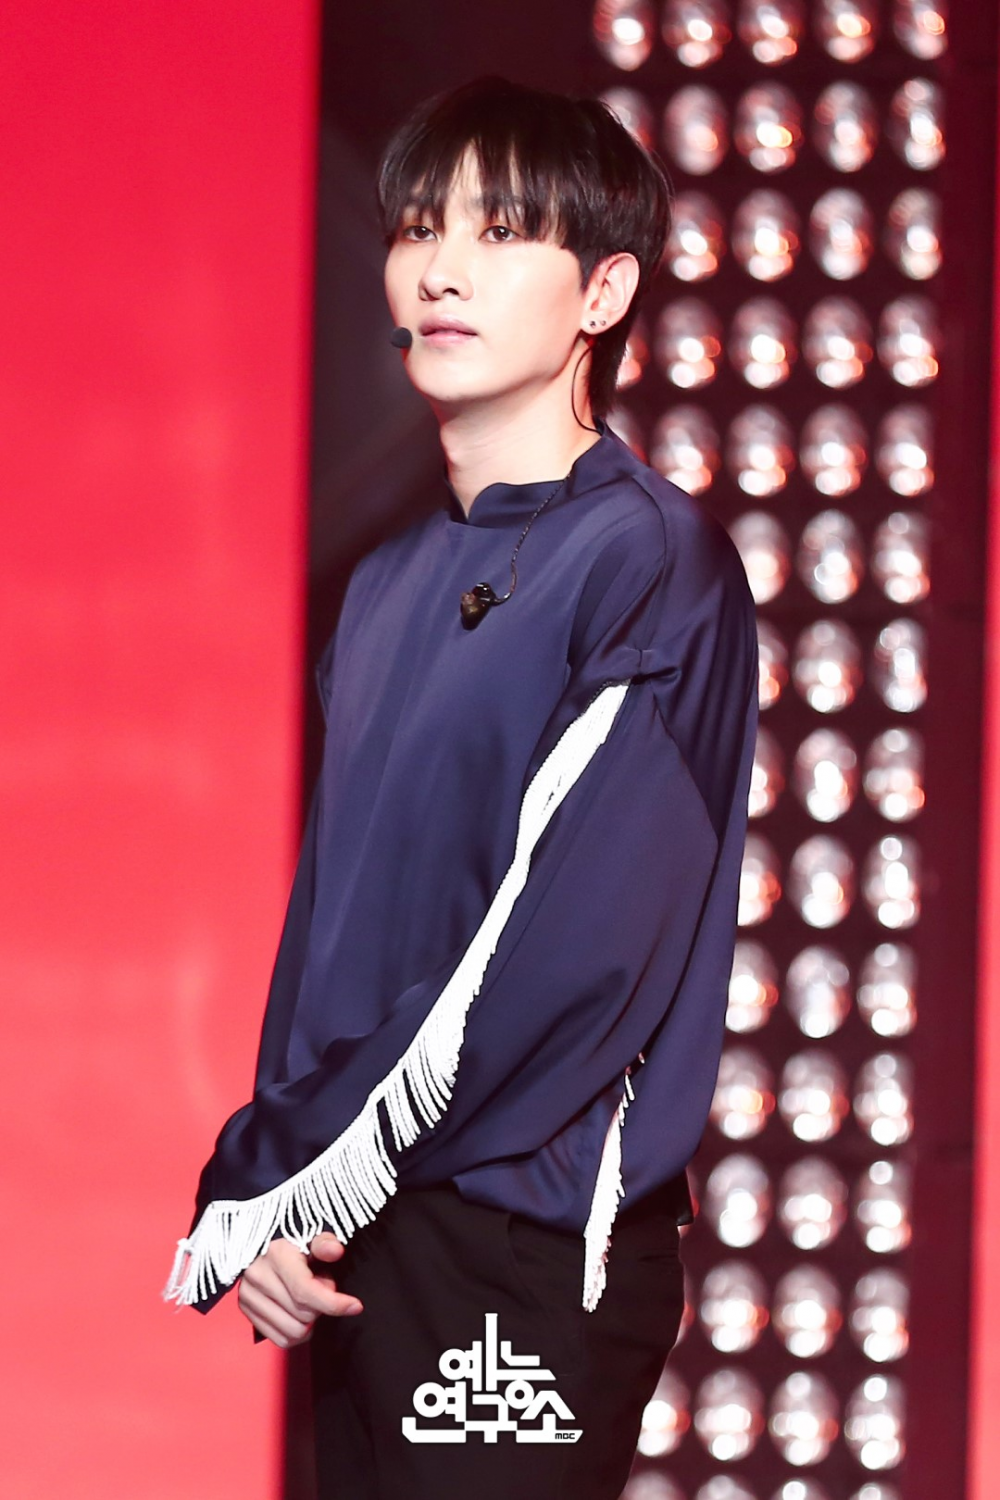 Фото Ынхёка из Super Junior на сцене впечатляющие своей харизмой